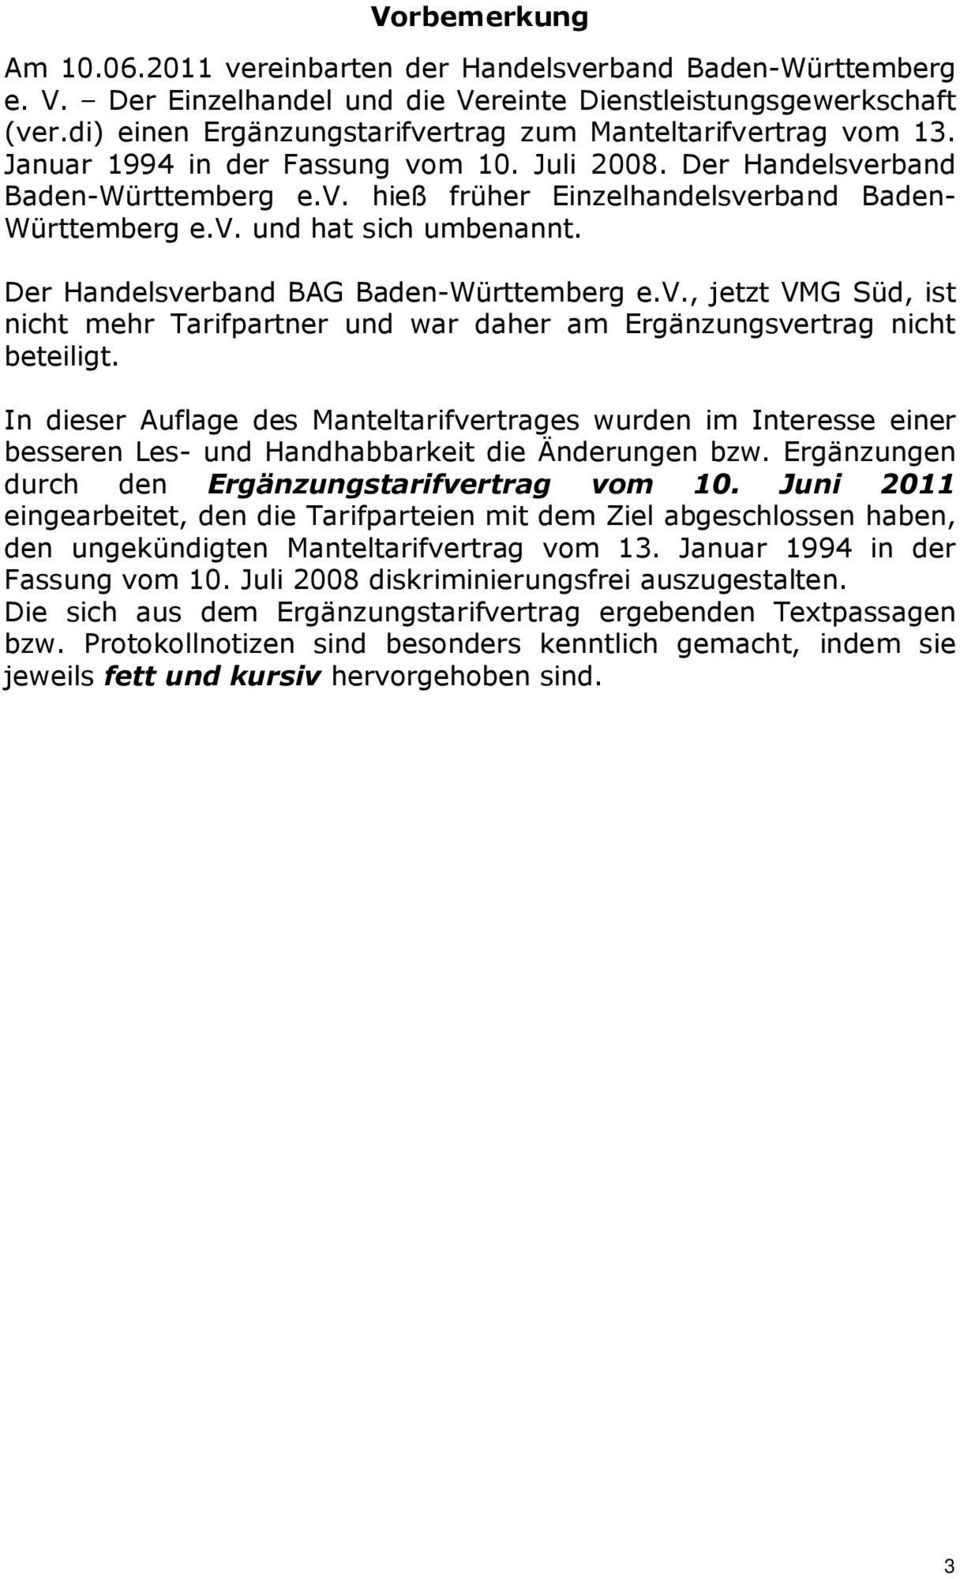 v. und hat sich umbenannt. Der Handelsverband BAG Baden-Württemberg e.v., jetzt VMG Süd, ist nicht mehr Tarifpartner und war daher am Ergänzungsvertrag nicht beteiligt.